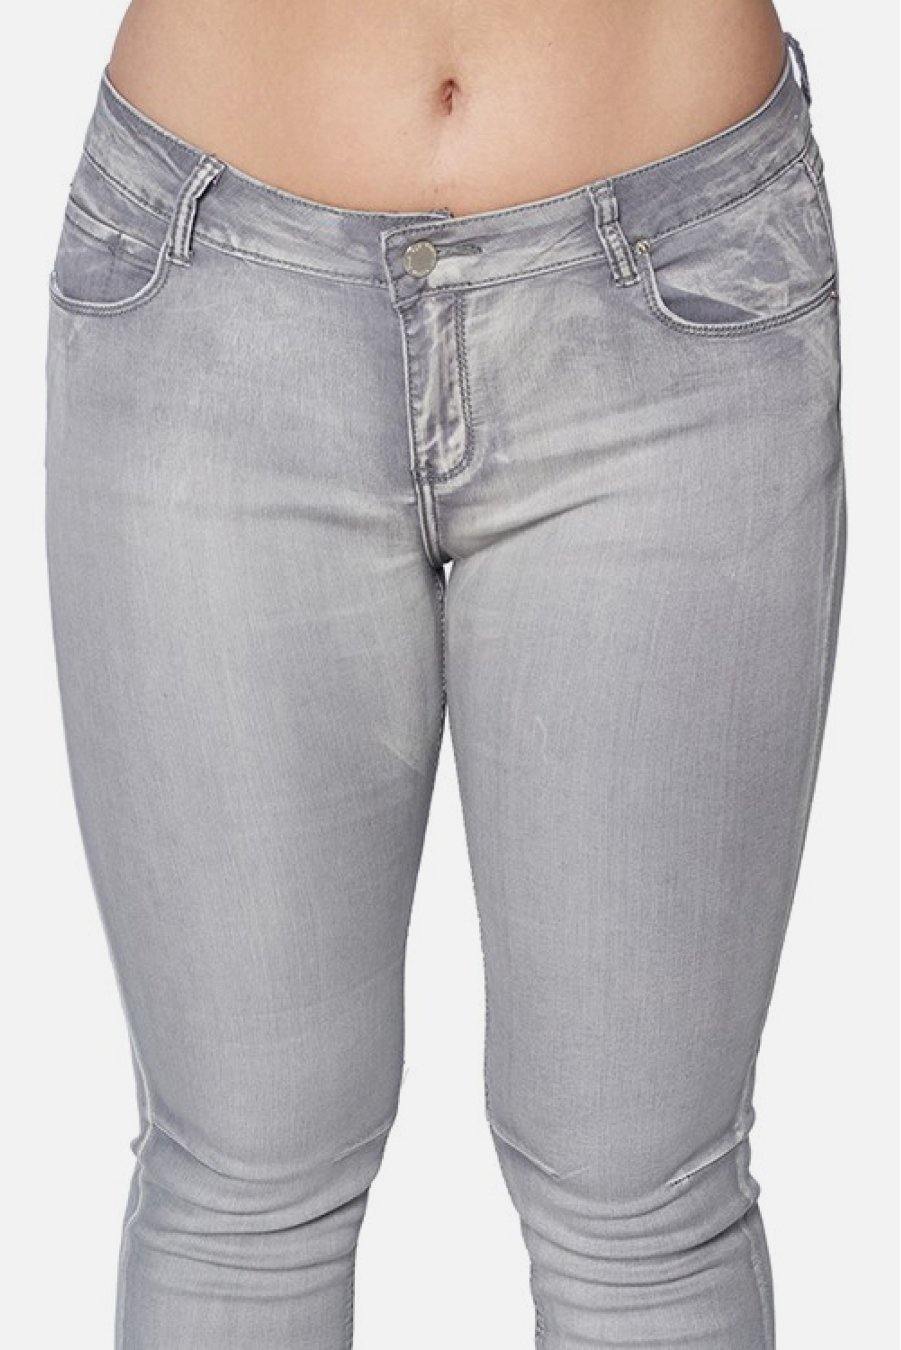 Plus Size Grey Denim Jeans - TheFashionwiz